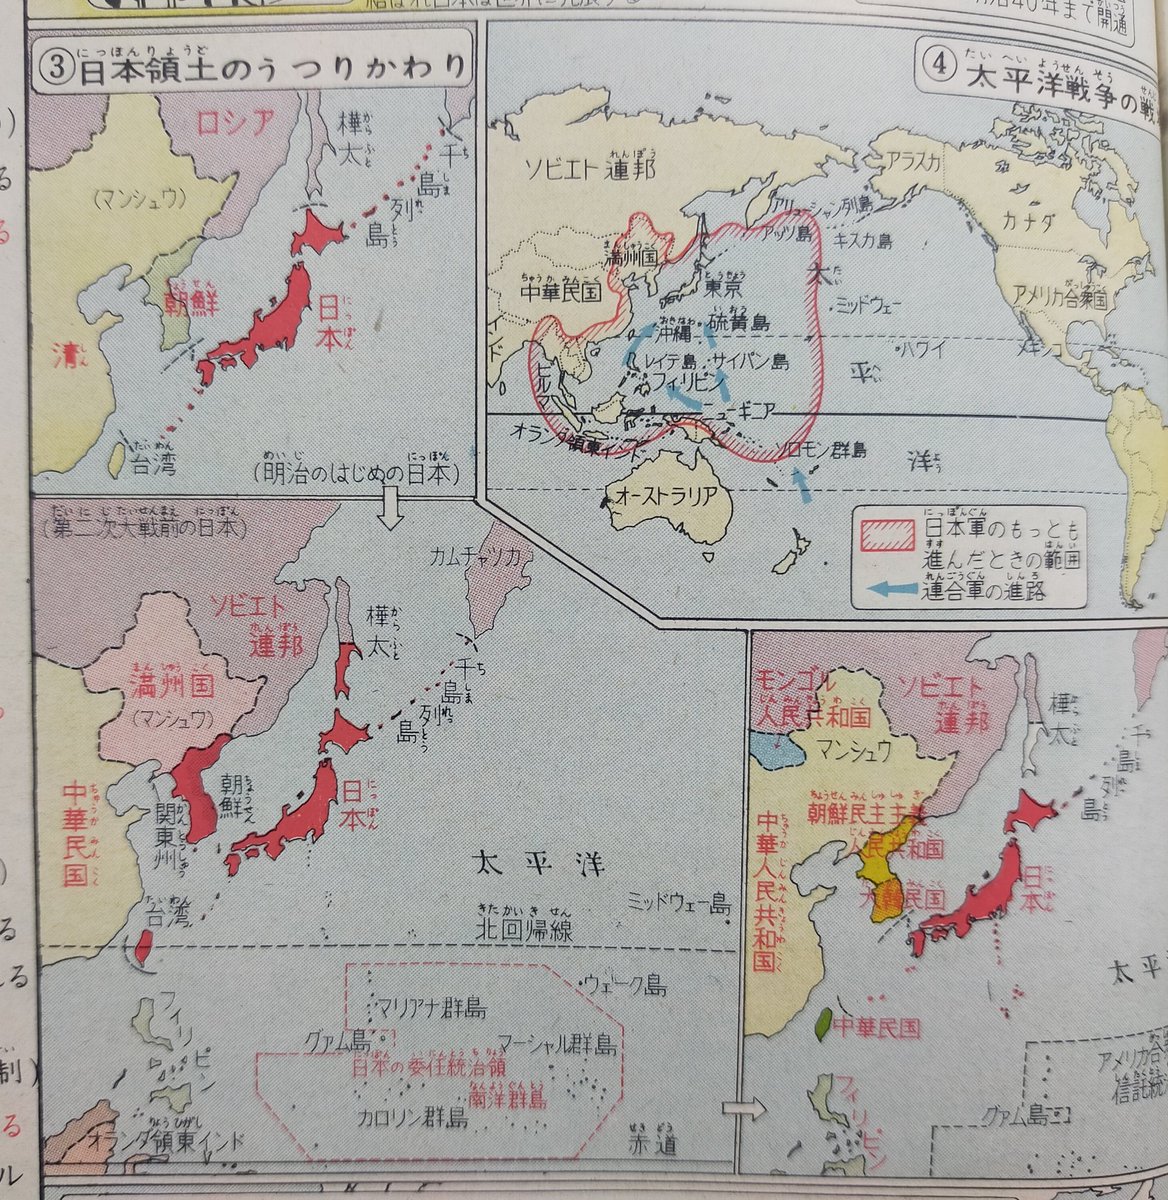 昭和35年の『小学校社会科地図帳(教授指導用)』(帝国書院)を見てみると、沖縄もしれっと日本領土として描かれていたりする。
これに対するヒントが昭和44年の「標準高等地図(教授資料)」(帝国書院)に書いてある。 https://t.co/z9RHfmOgU2 